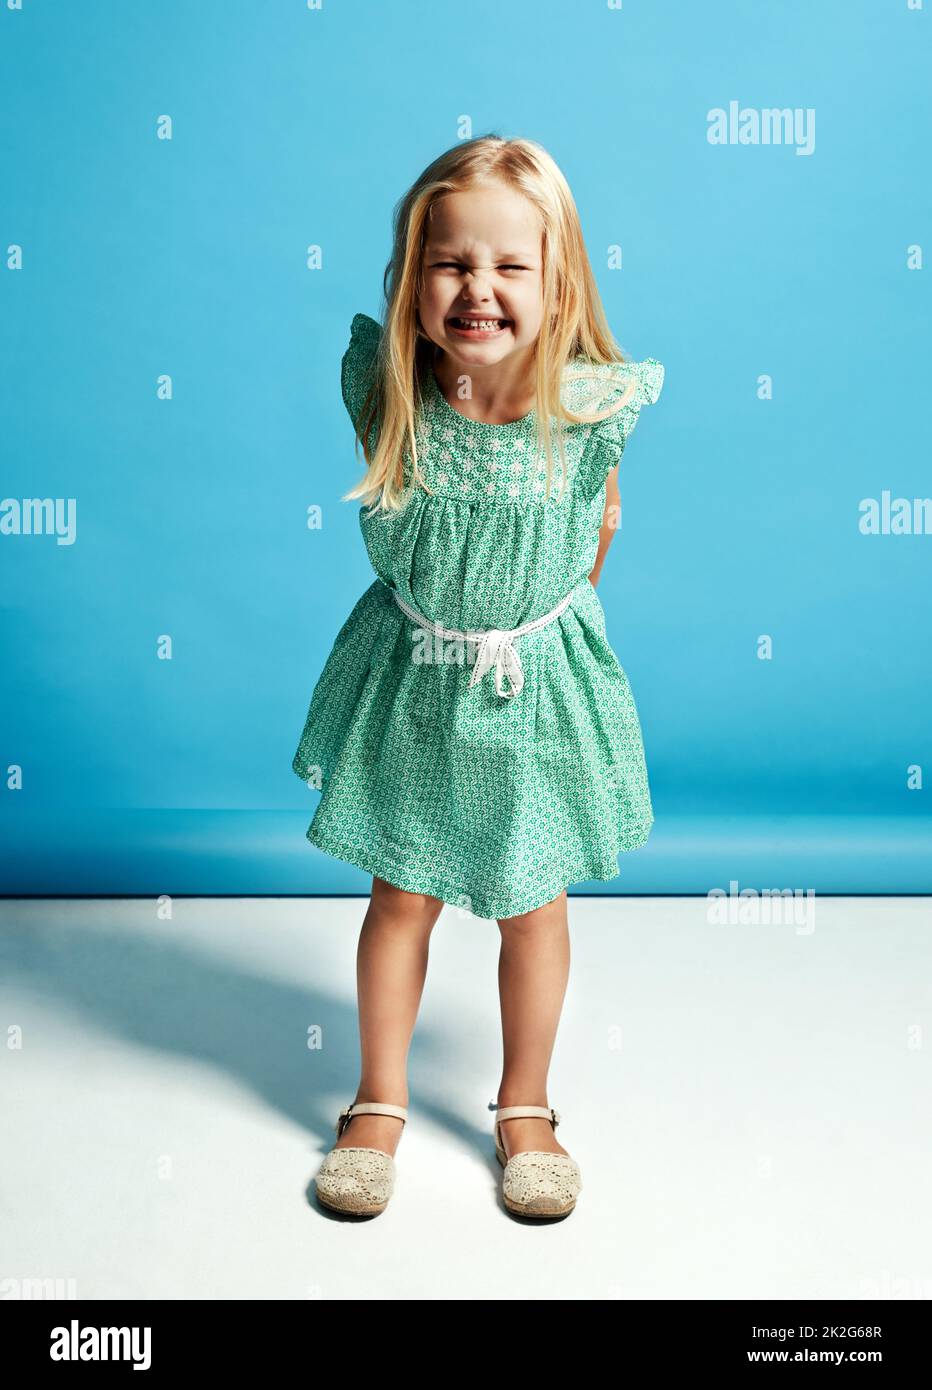 Hast du heute gelächelt? Aufnahme eines entzückenden kleinen Mädchens, das die Kamera anlächelt. Stockfoto